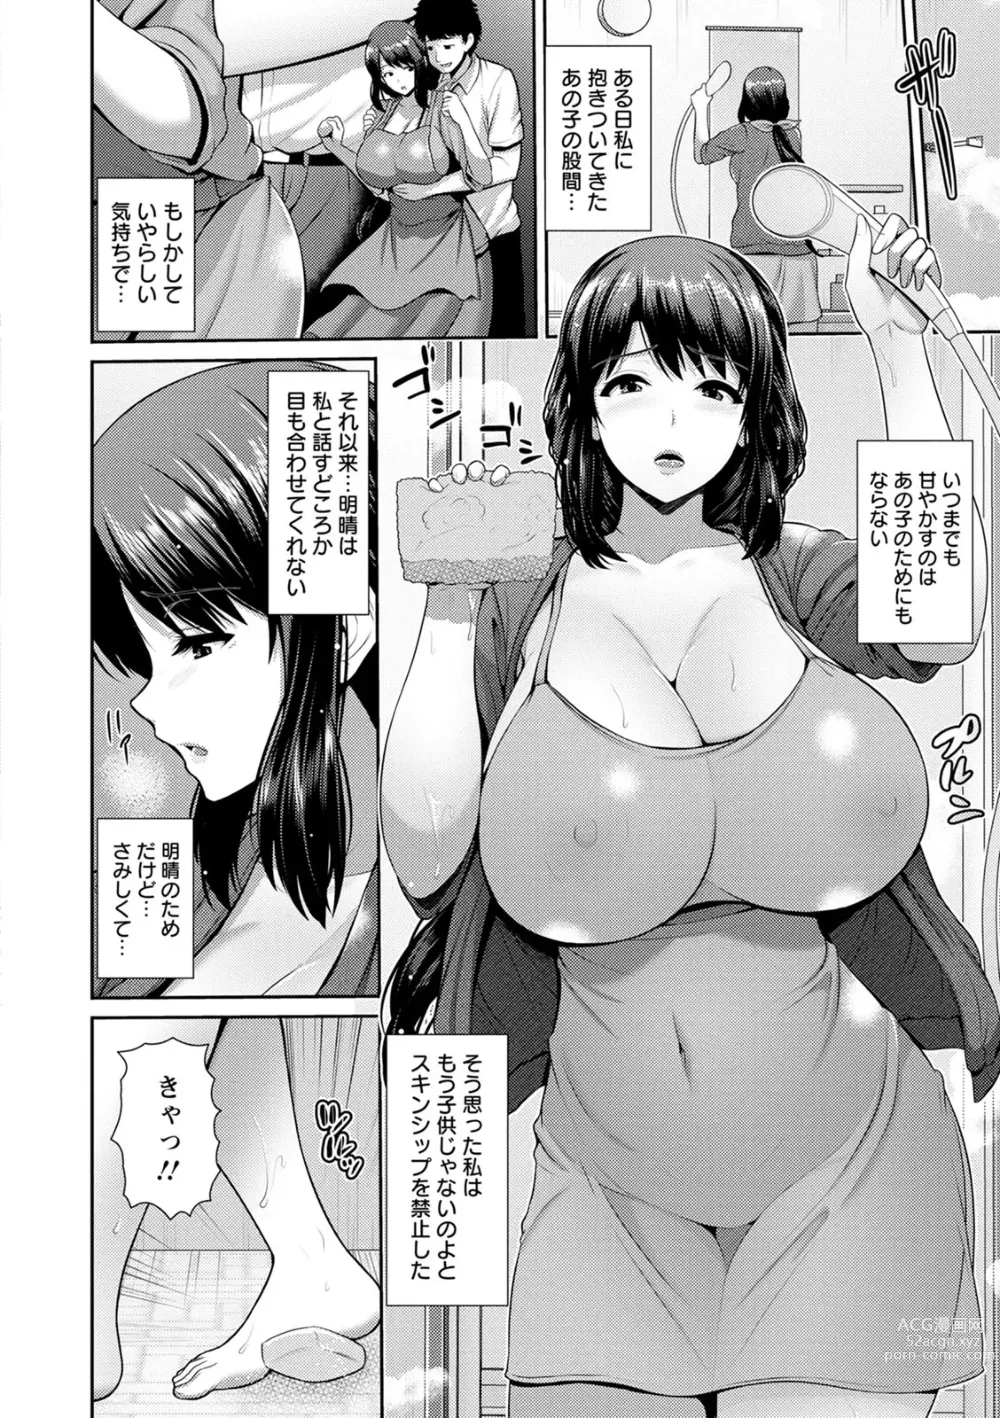 Page 8 of manga Shitsu Raku En